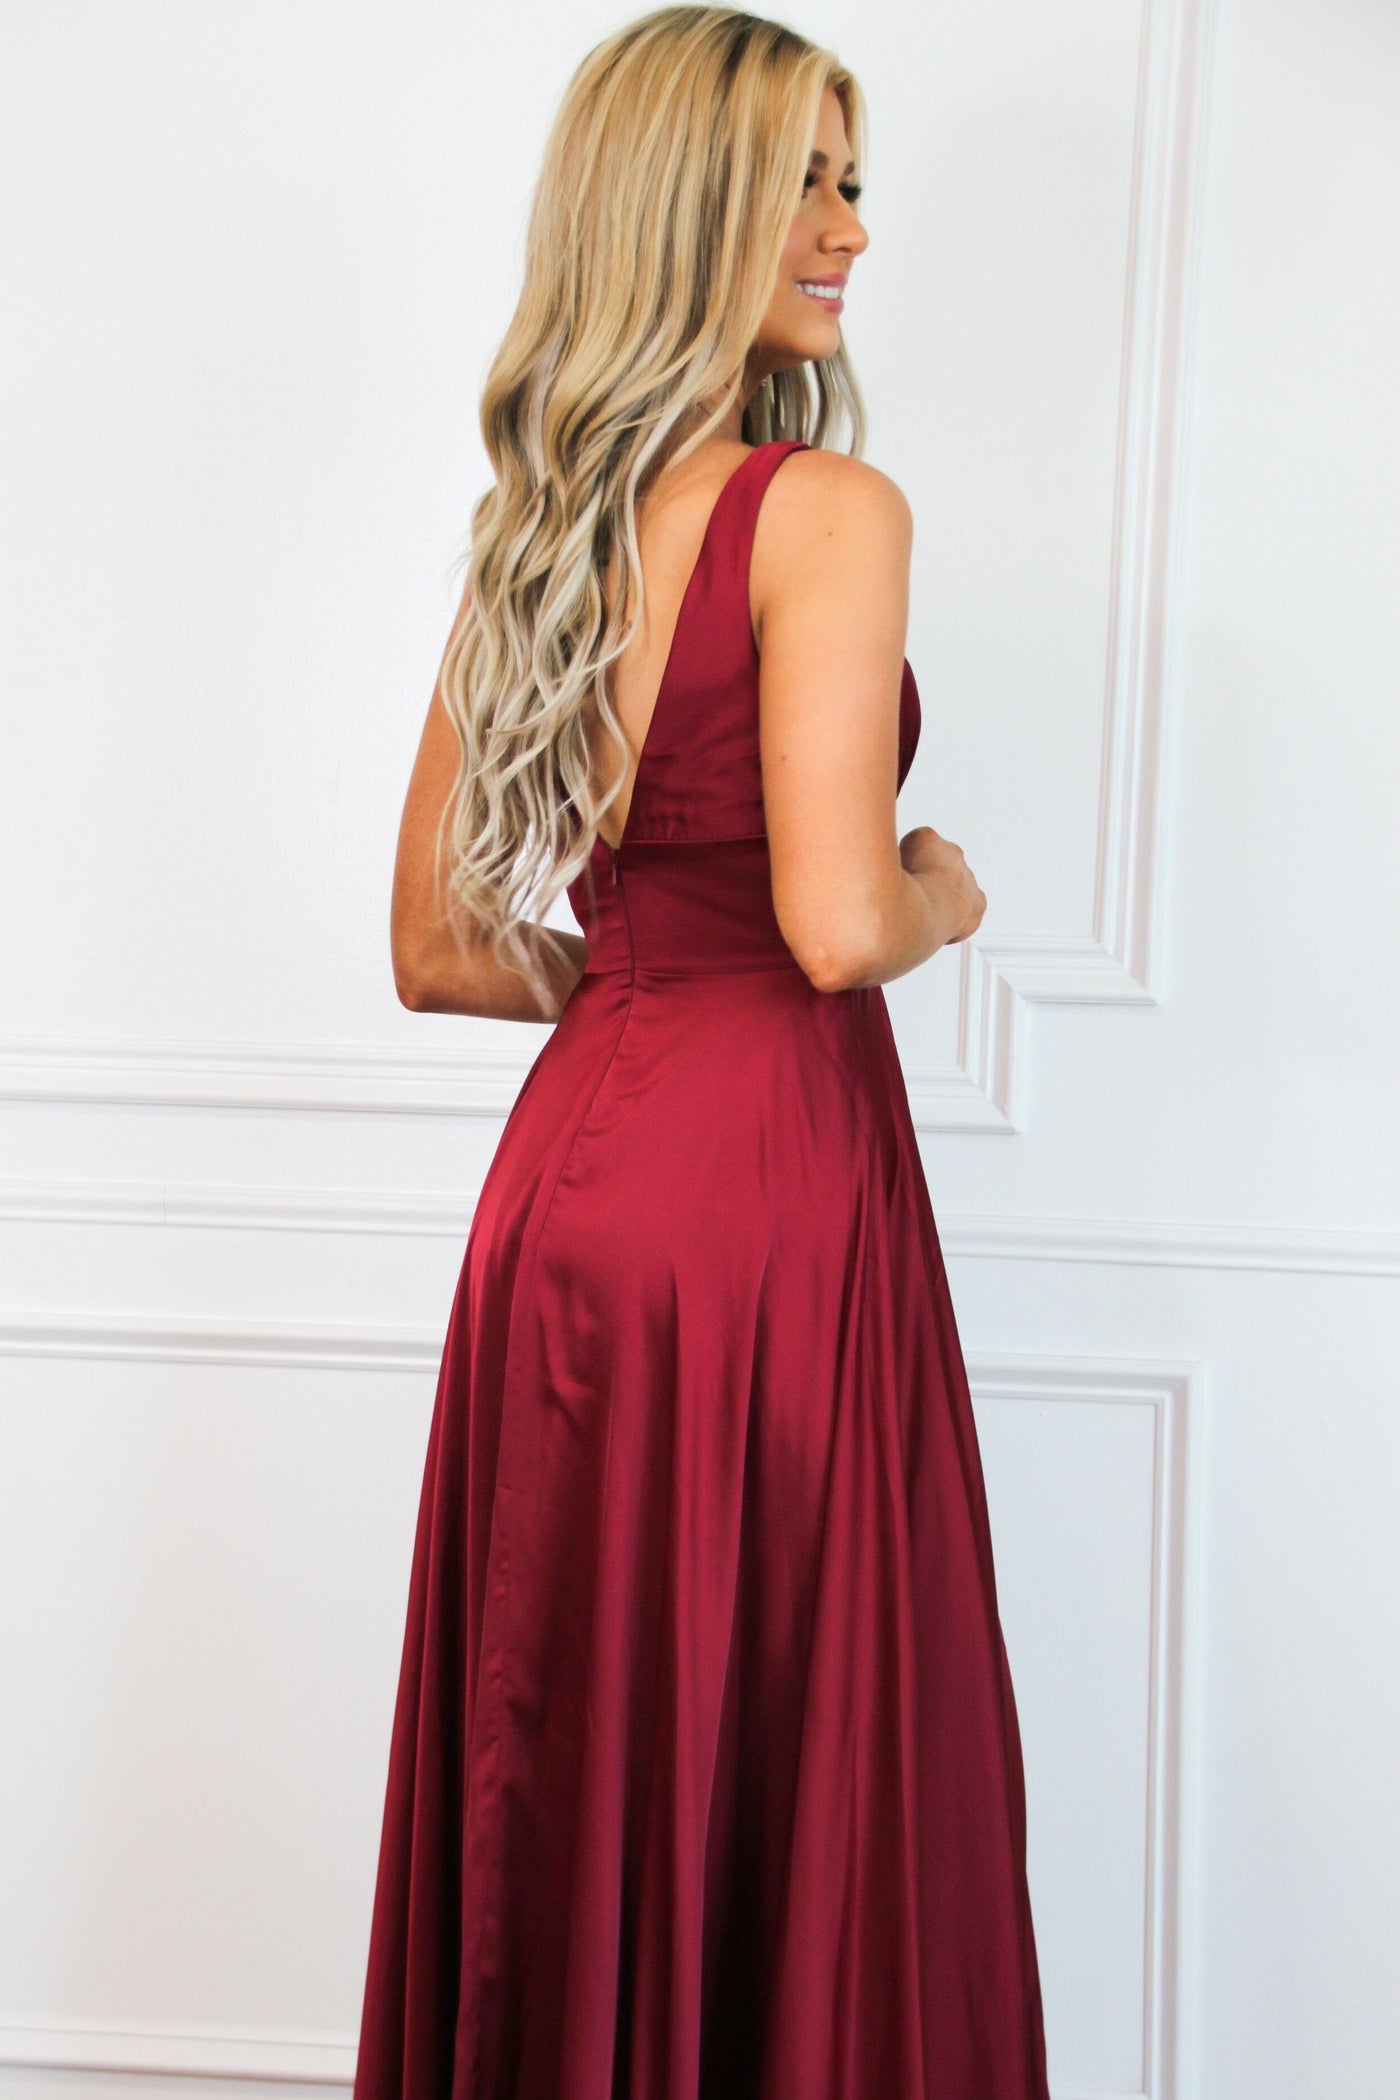 Remi Satin V-Neck Slit Formal Dress: Burgundy - Bella and Bloom Boutique